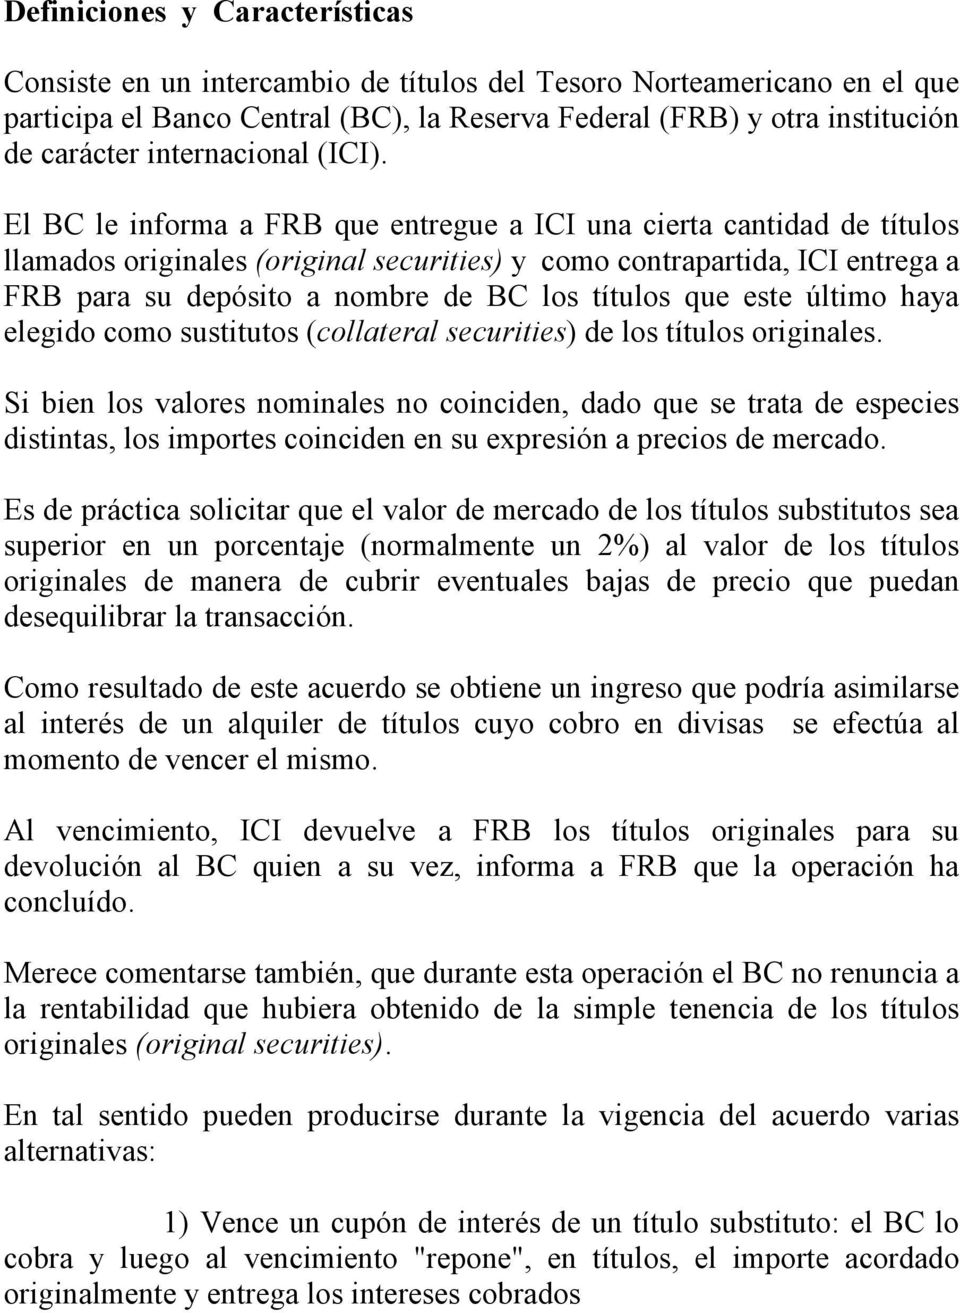 El BC le informa a FRB que entregue a ICI una cierta cantidad de títulos llamados originales (original securities) y como contrapartida, ICI entrega a FRB para su depósito a nombre de BC los títulos